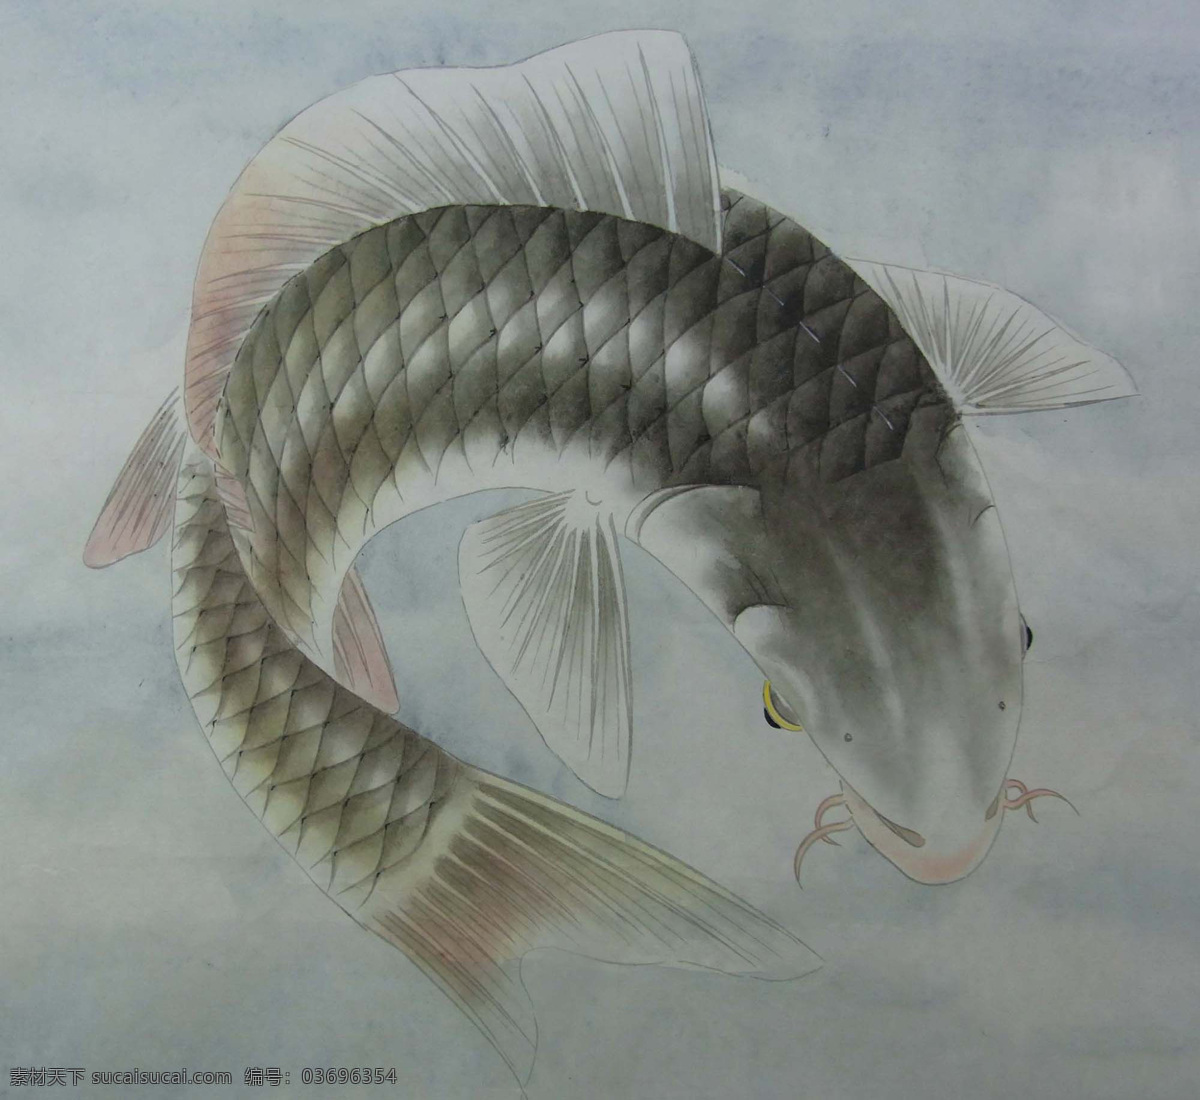 鲤鱼 工笔画 国画鲤鱼 绘画书法 美术绘画 水墨画 水墨鲤鱼 鱼类 文化艺术 生物世界